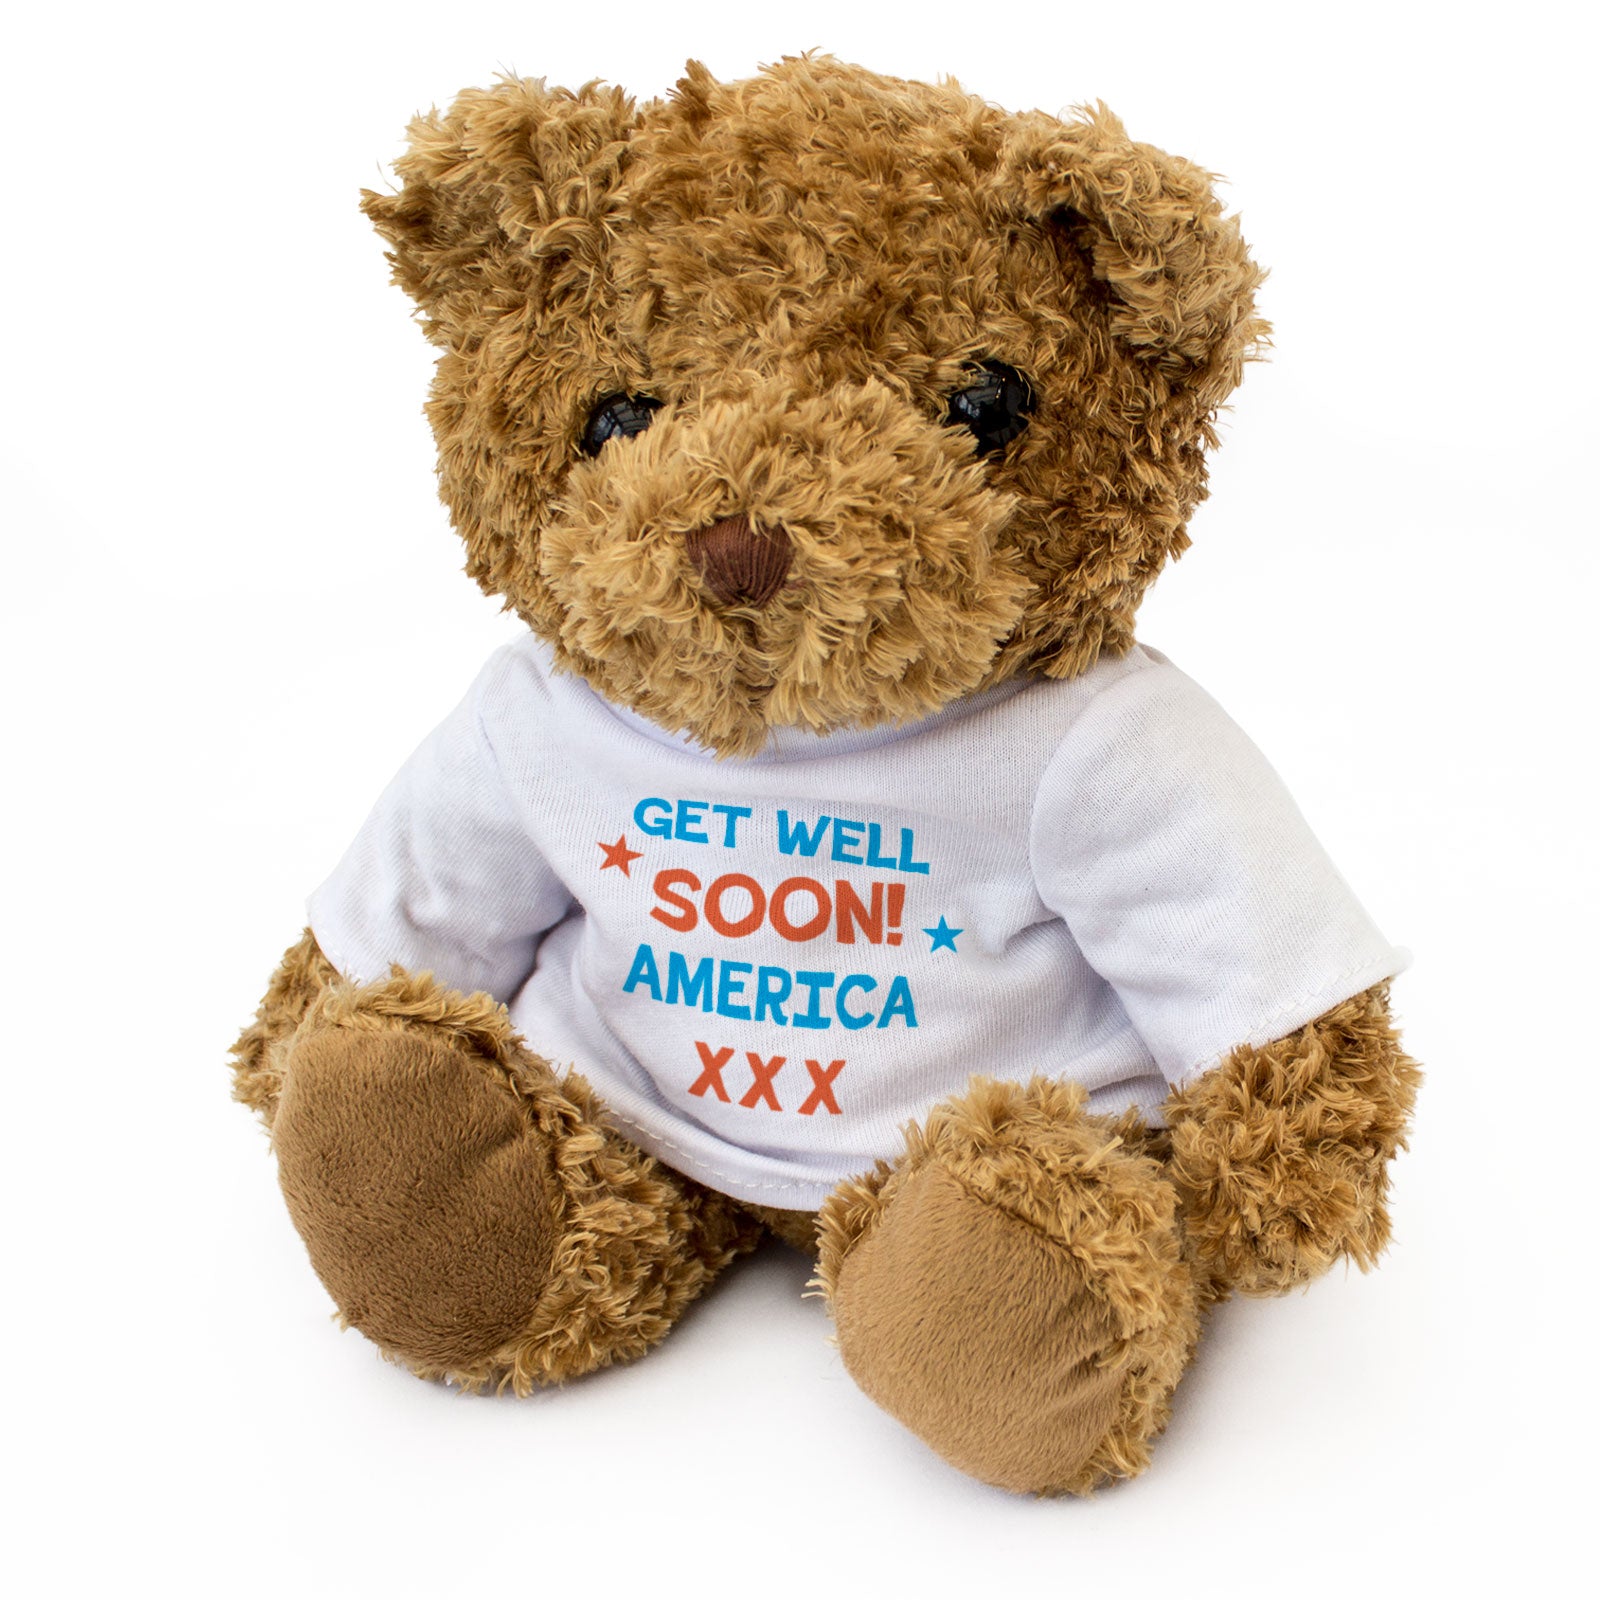 Get Well Soon America - Teddy Bear